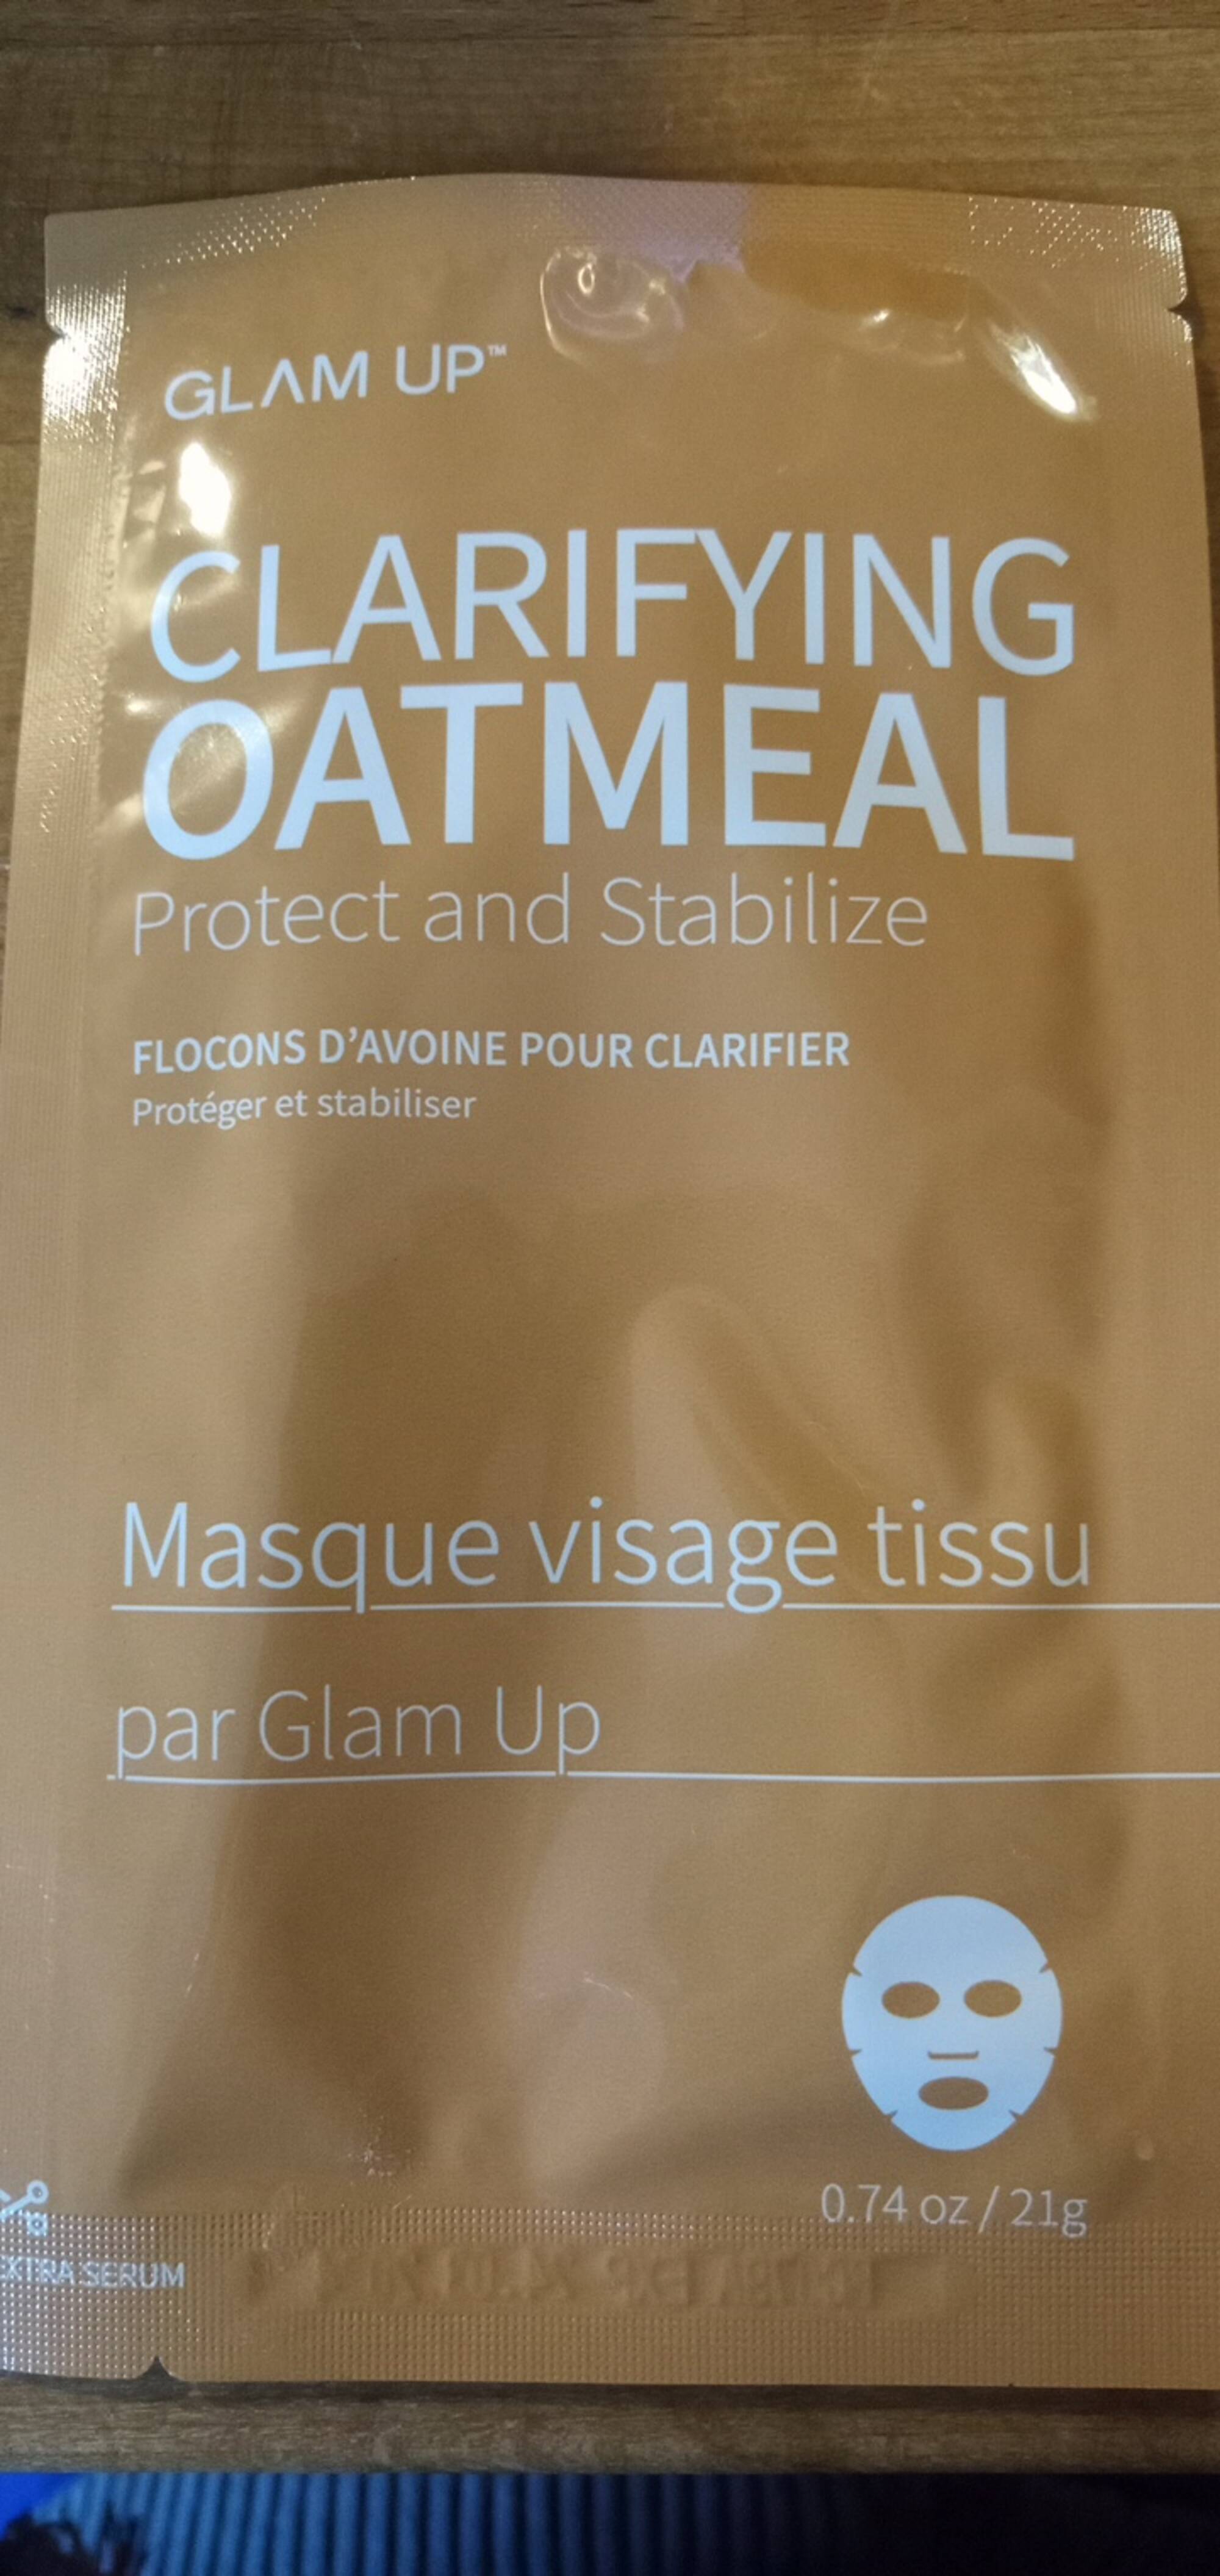 GLAM'UP - Clarifiying oatmeal - Masque visage tissu